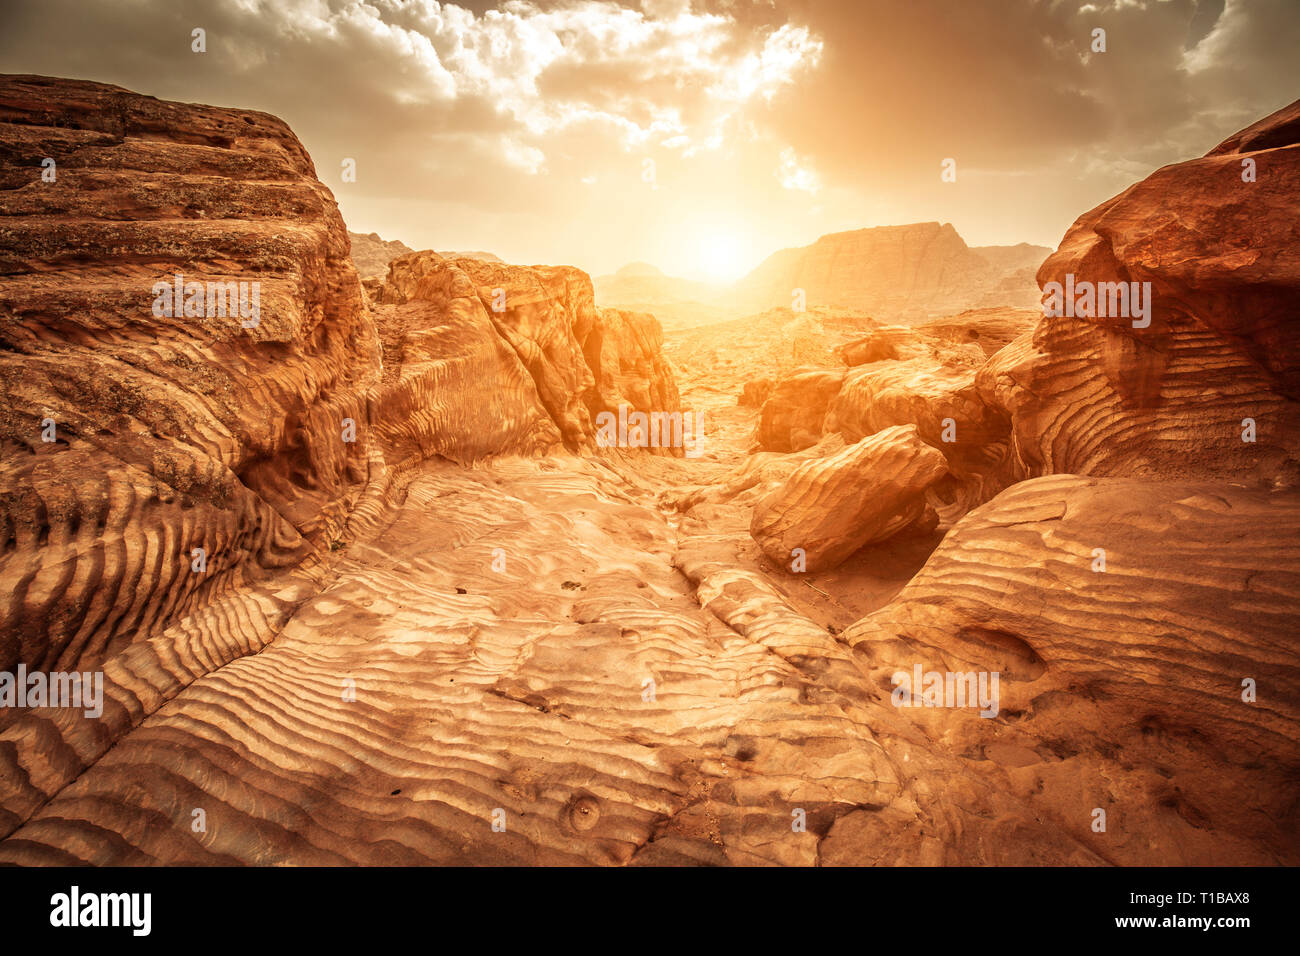 Détail de rochers de grès à la lumière du soleil, la voie des Nabatéens, paysage pittoresque situé à Pétra, en Jordanie. Banque D'Images